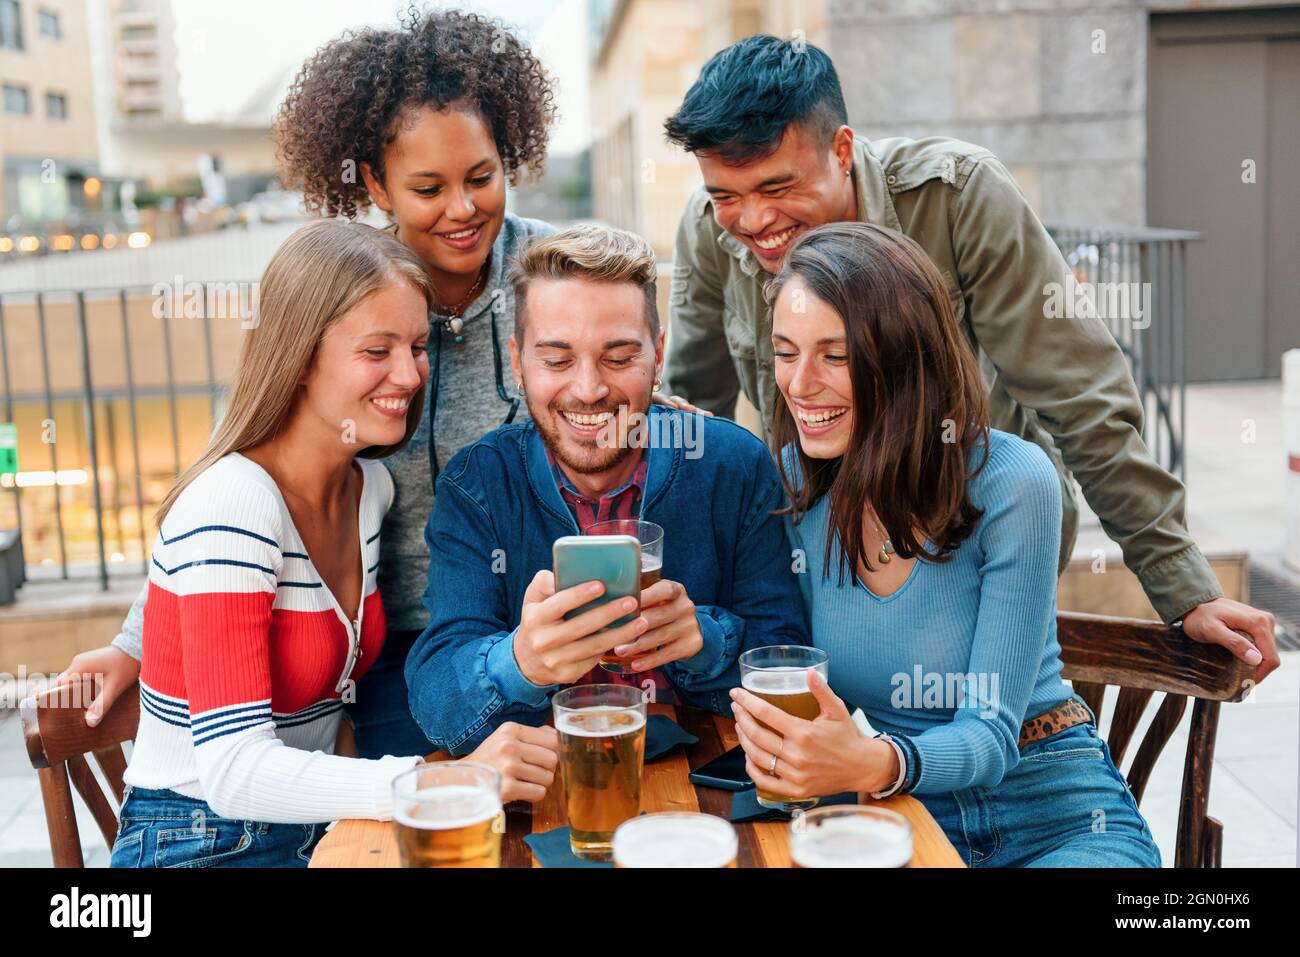 Un gruppo di giovani amici diversi si è riunito intorno a uno smartphone a un tavolo da pub mentre si godono una birra insieme ridendo e scherzando mentre fanno una videochiamata Foto Stock